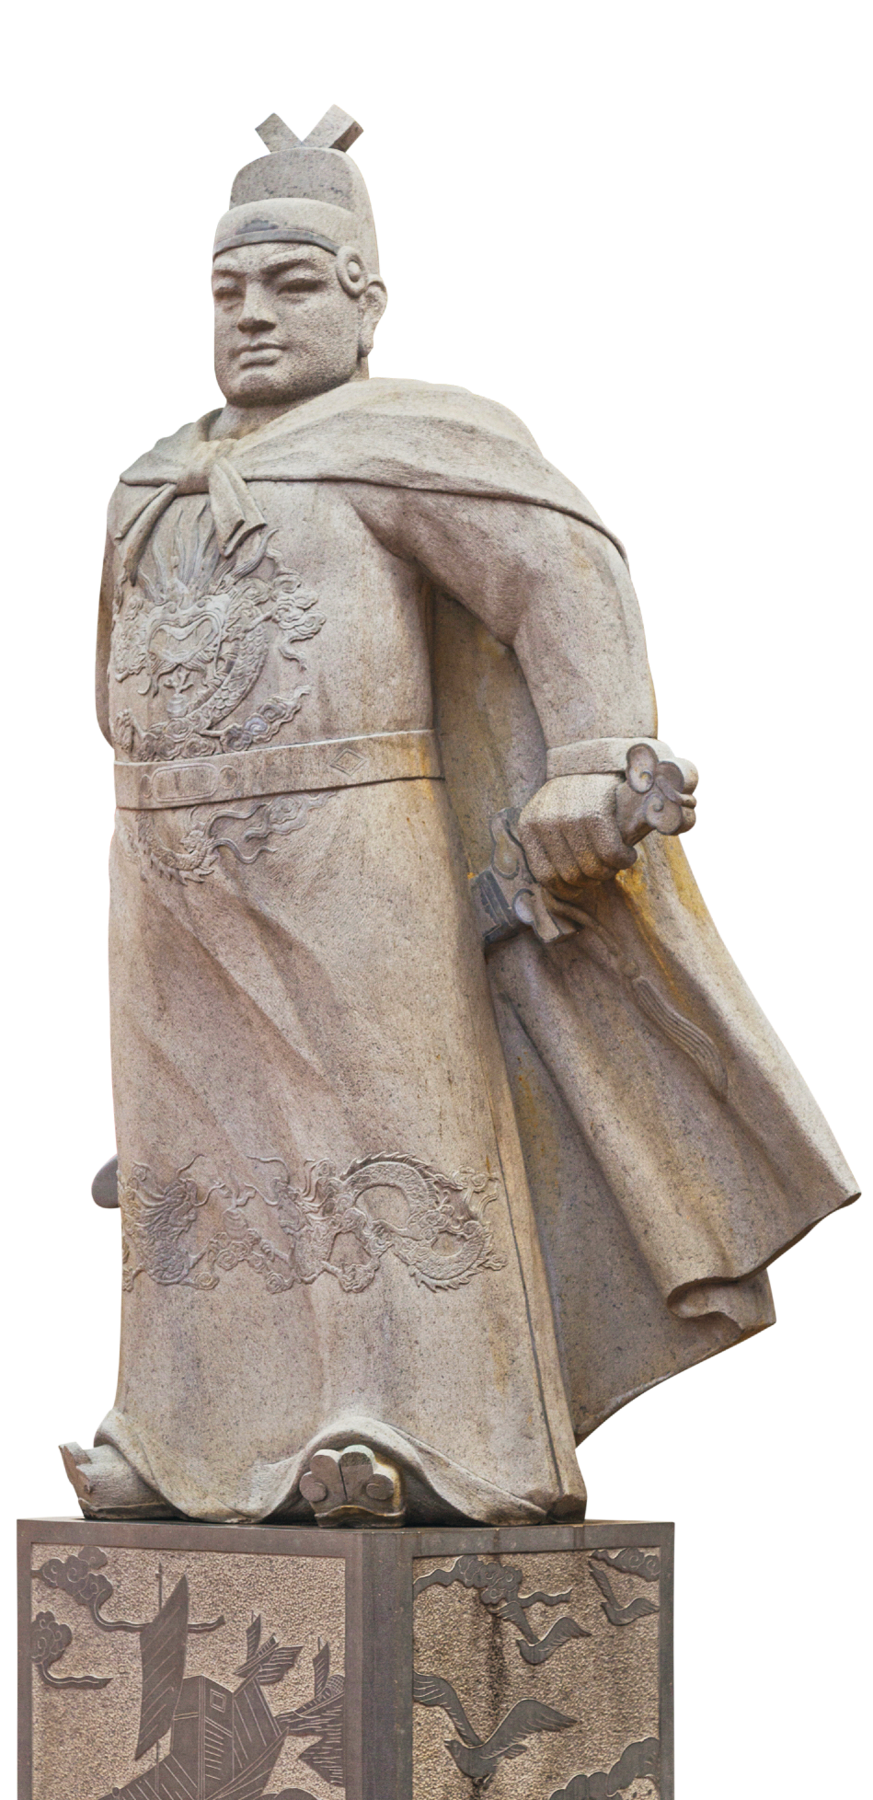 Escultura. Estátua em pedra de um homem com traços orientais. Tem o rosto largo e o queixo quadrado. Usa um chapéu e uma capa. Segura nas mãos uma espada, que fica entre a parte de trás de seu corpo e sua capa.